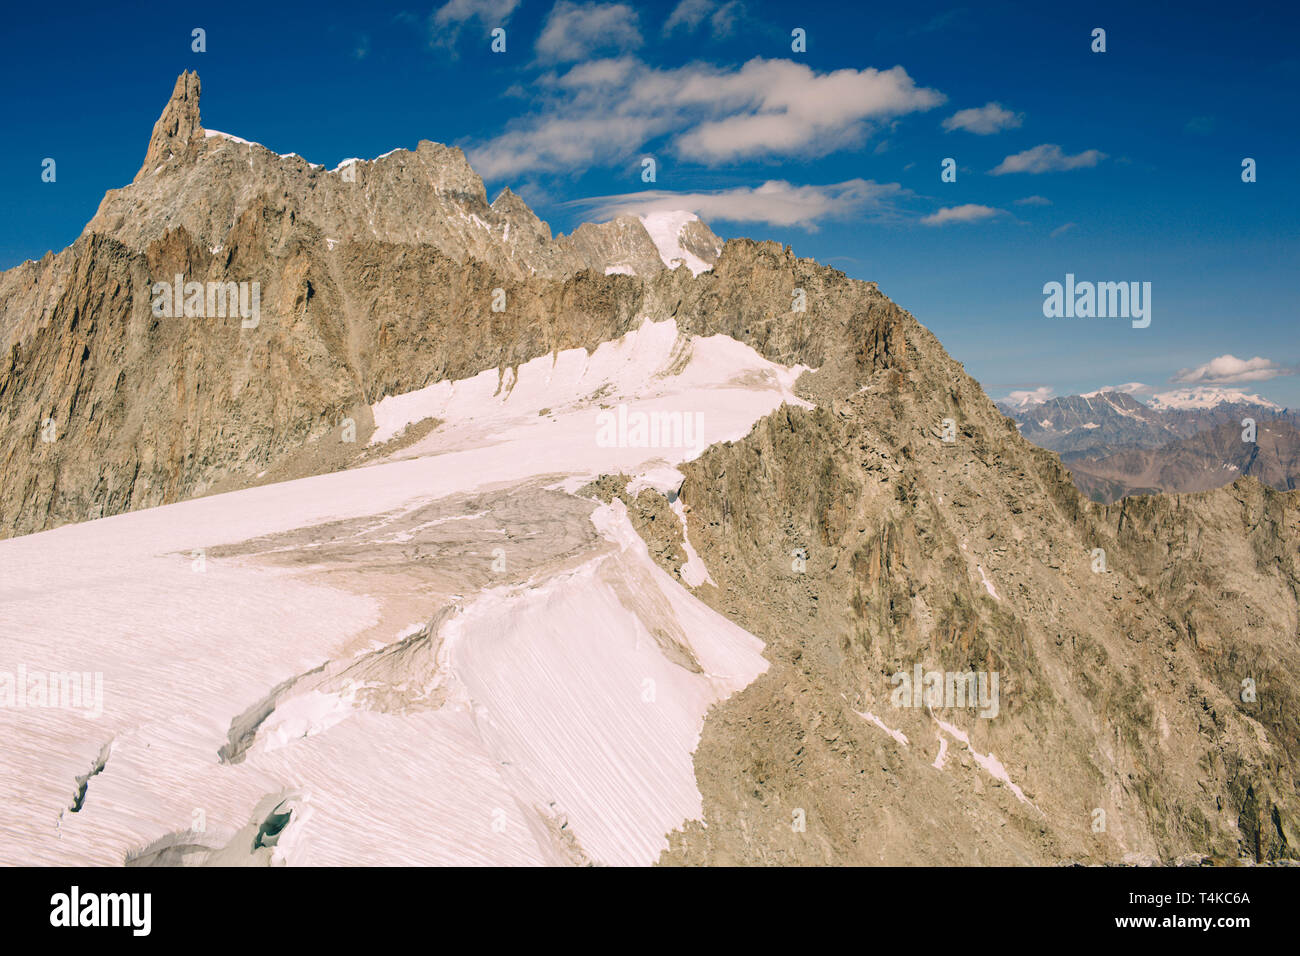 Panorama del macizo del Mont Blanc, la montaña más alta y popular en Europa noroeste de Italia. Foto de stock